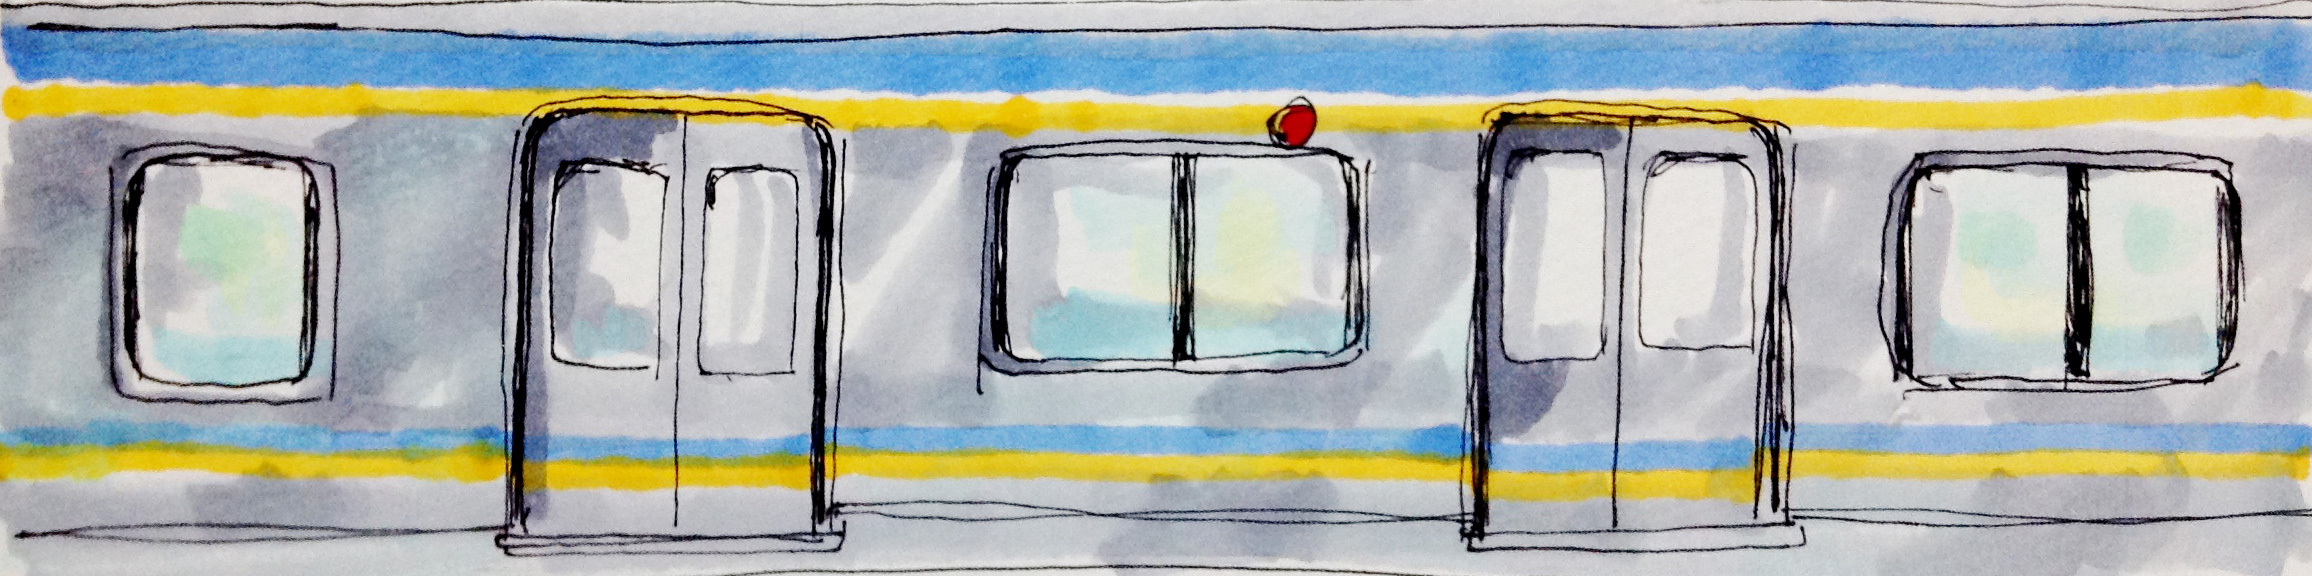 南海電車の車体のカラーのイメージをコピックで描いたイラスト